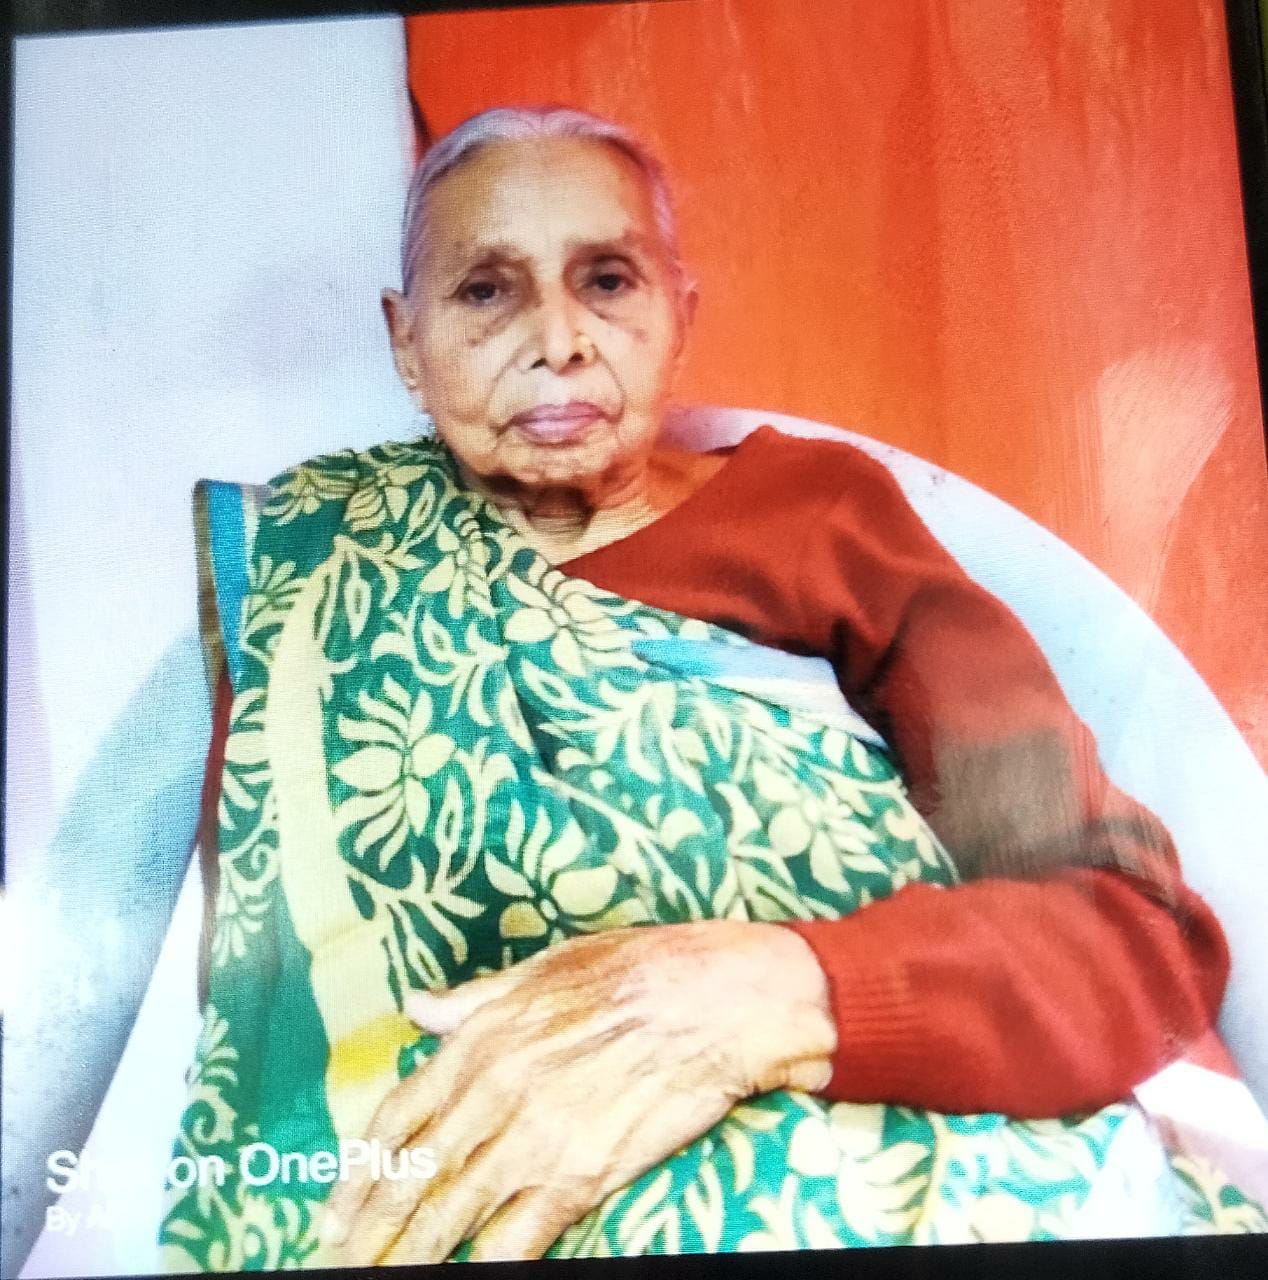 धर्म की वाहक सरस्वती देवी ने रांची में 93 साल की उम्र में ली अंतिम सांस, अंत्येष्ठि 24 फरवरी को